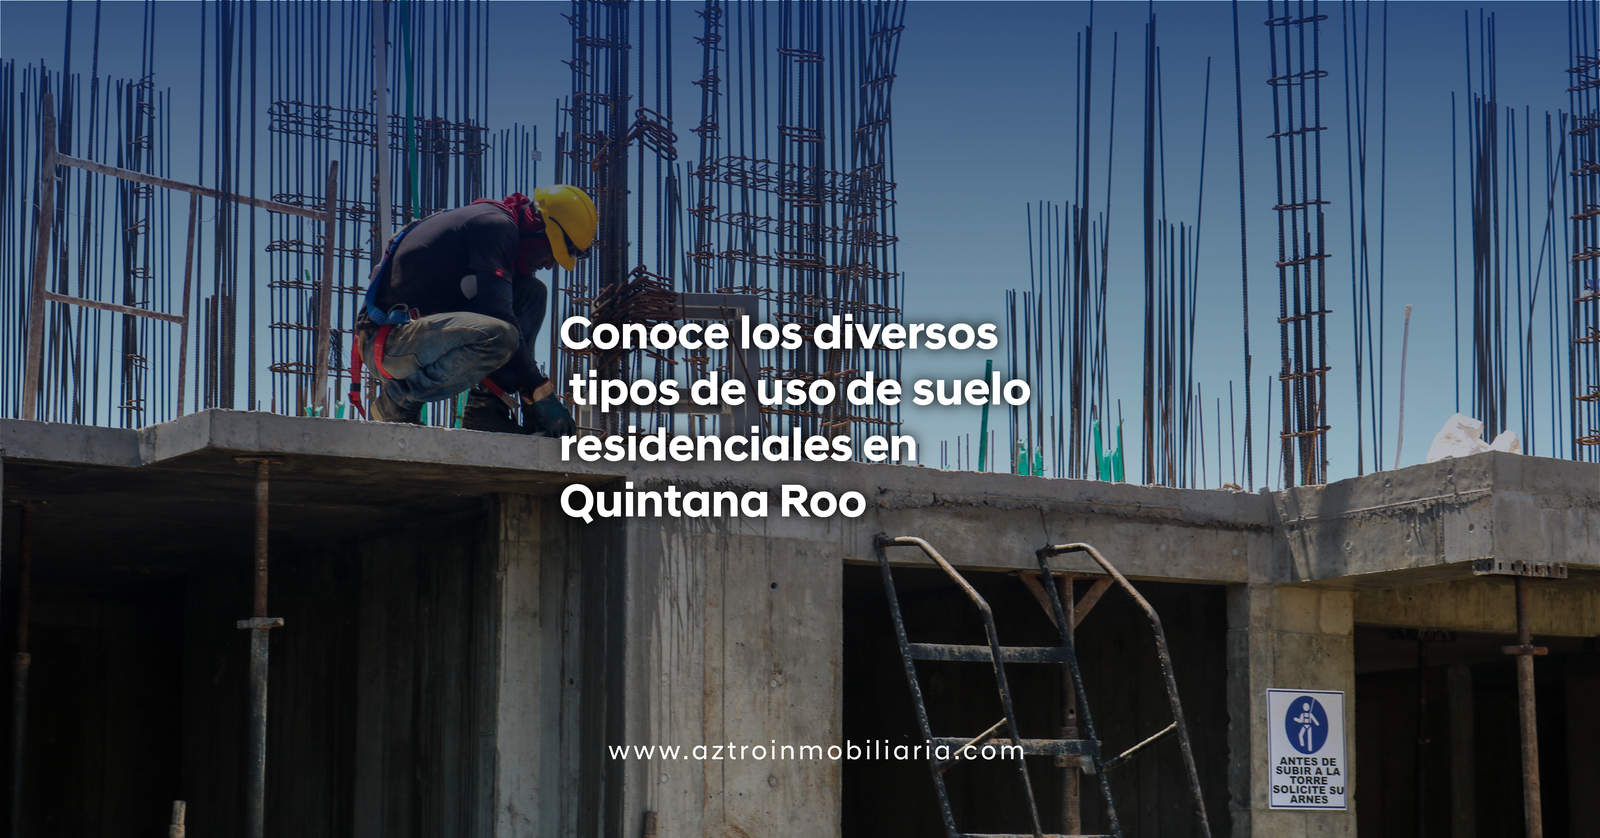 Conoce los diversos tipos de uso de suelo residenciales en Quintana Roo